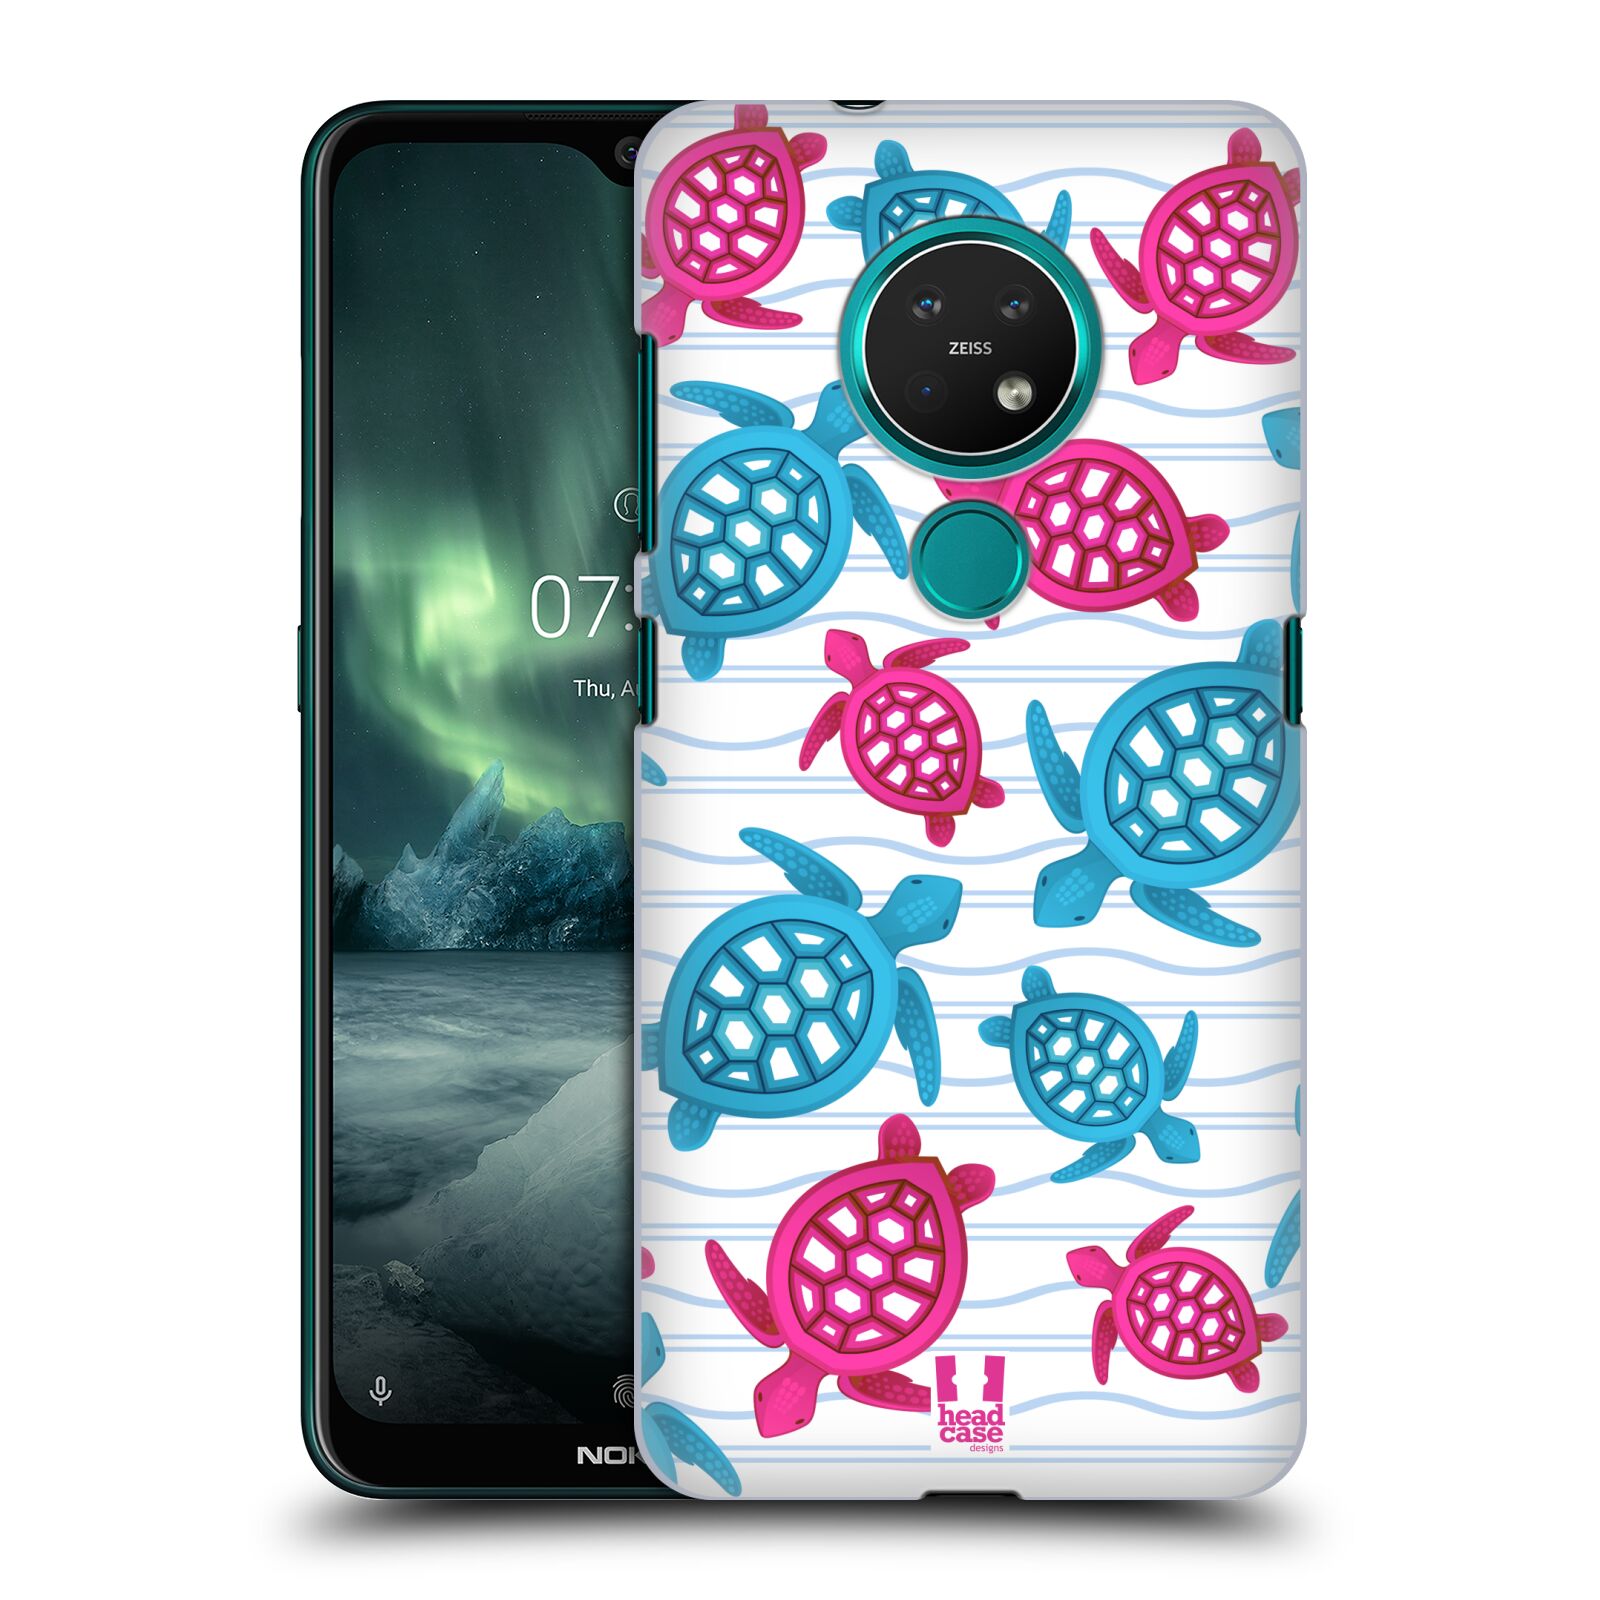 Pouzdro na mobil NOKIA 7.2 - HEAD CASE - vzor mořský živočich želva modrá a růžová